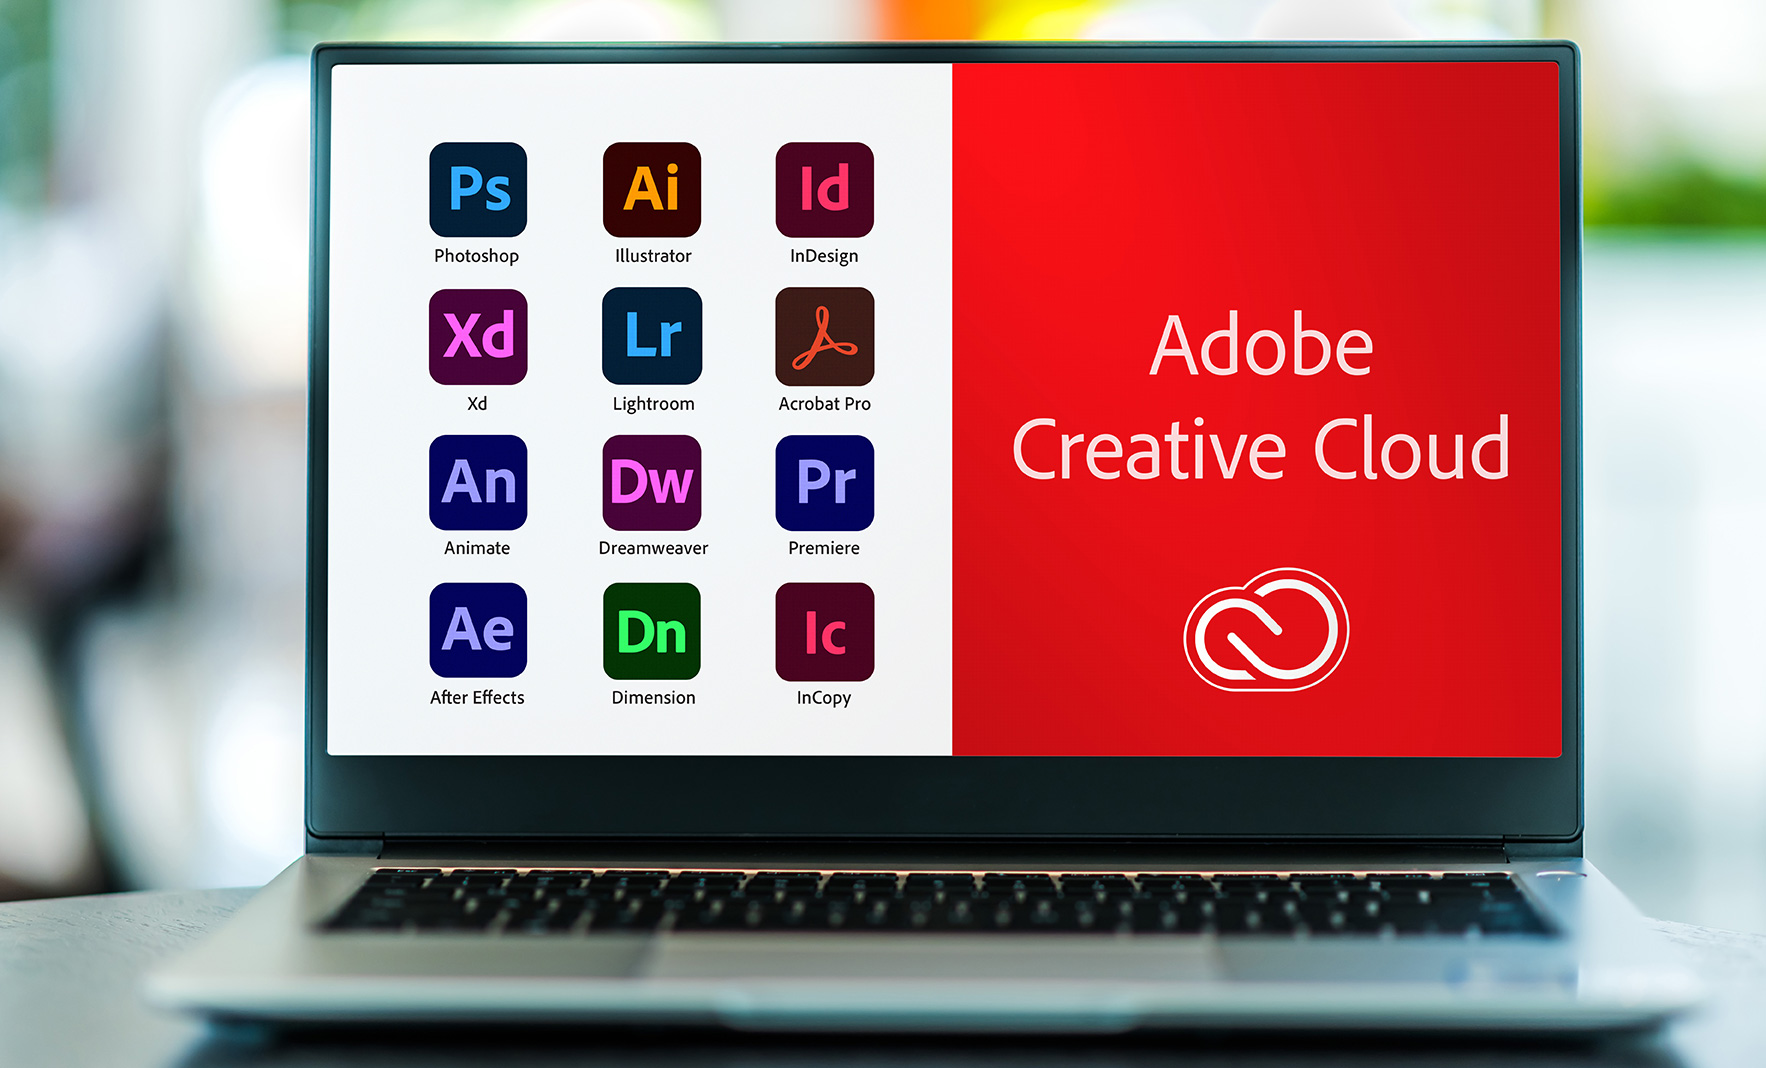 Ekran laptopa, na którym wyświetlone są ikony wszystkich programów Adobe Creative Cloud